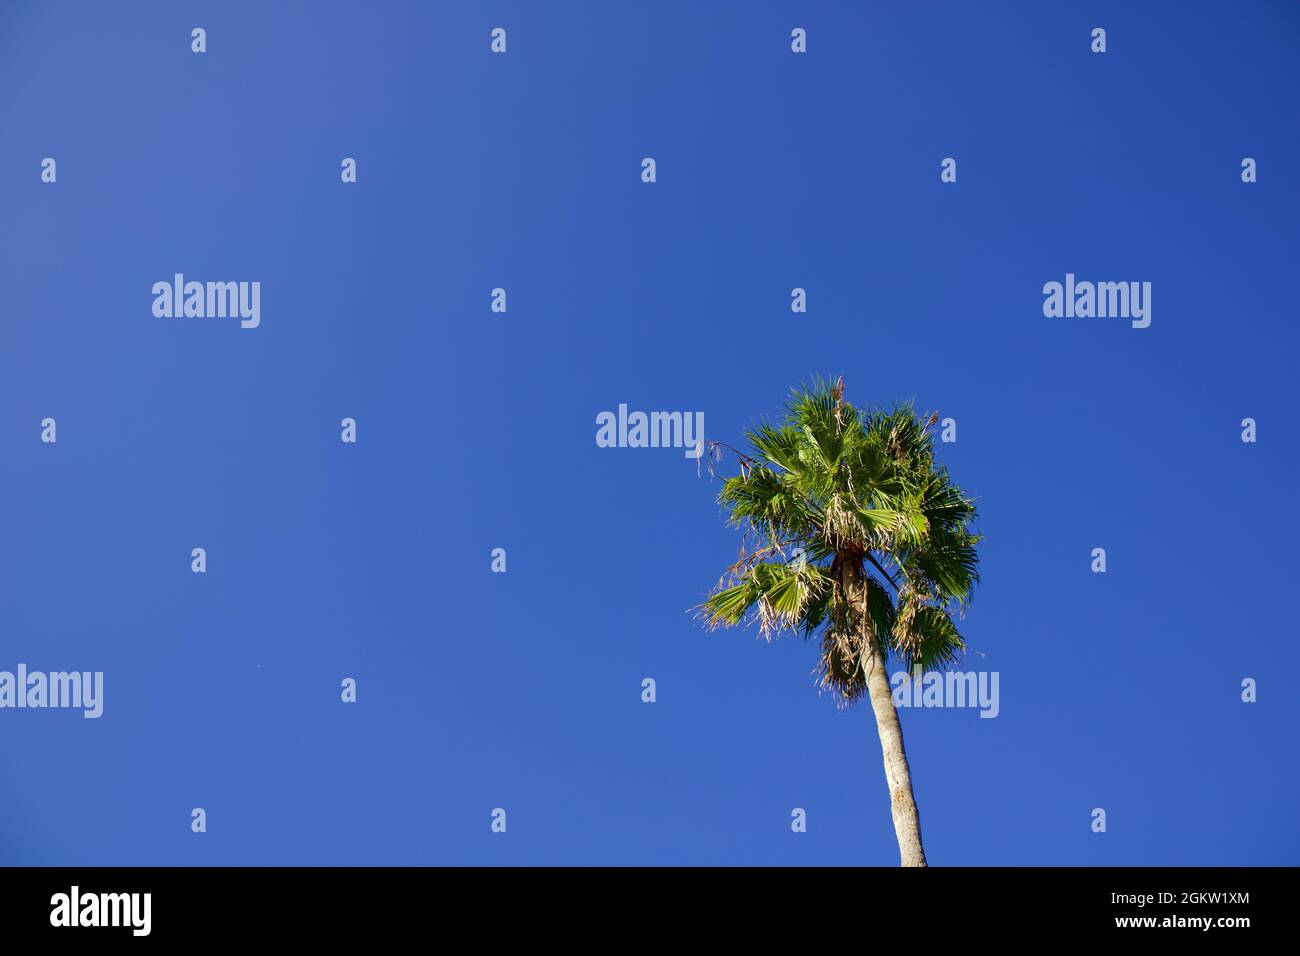 Albero di palma con un cielo blu chiaro Foto Stock